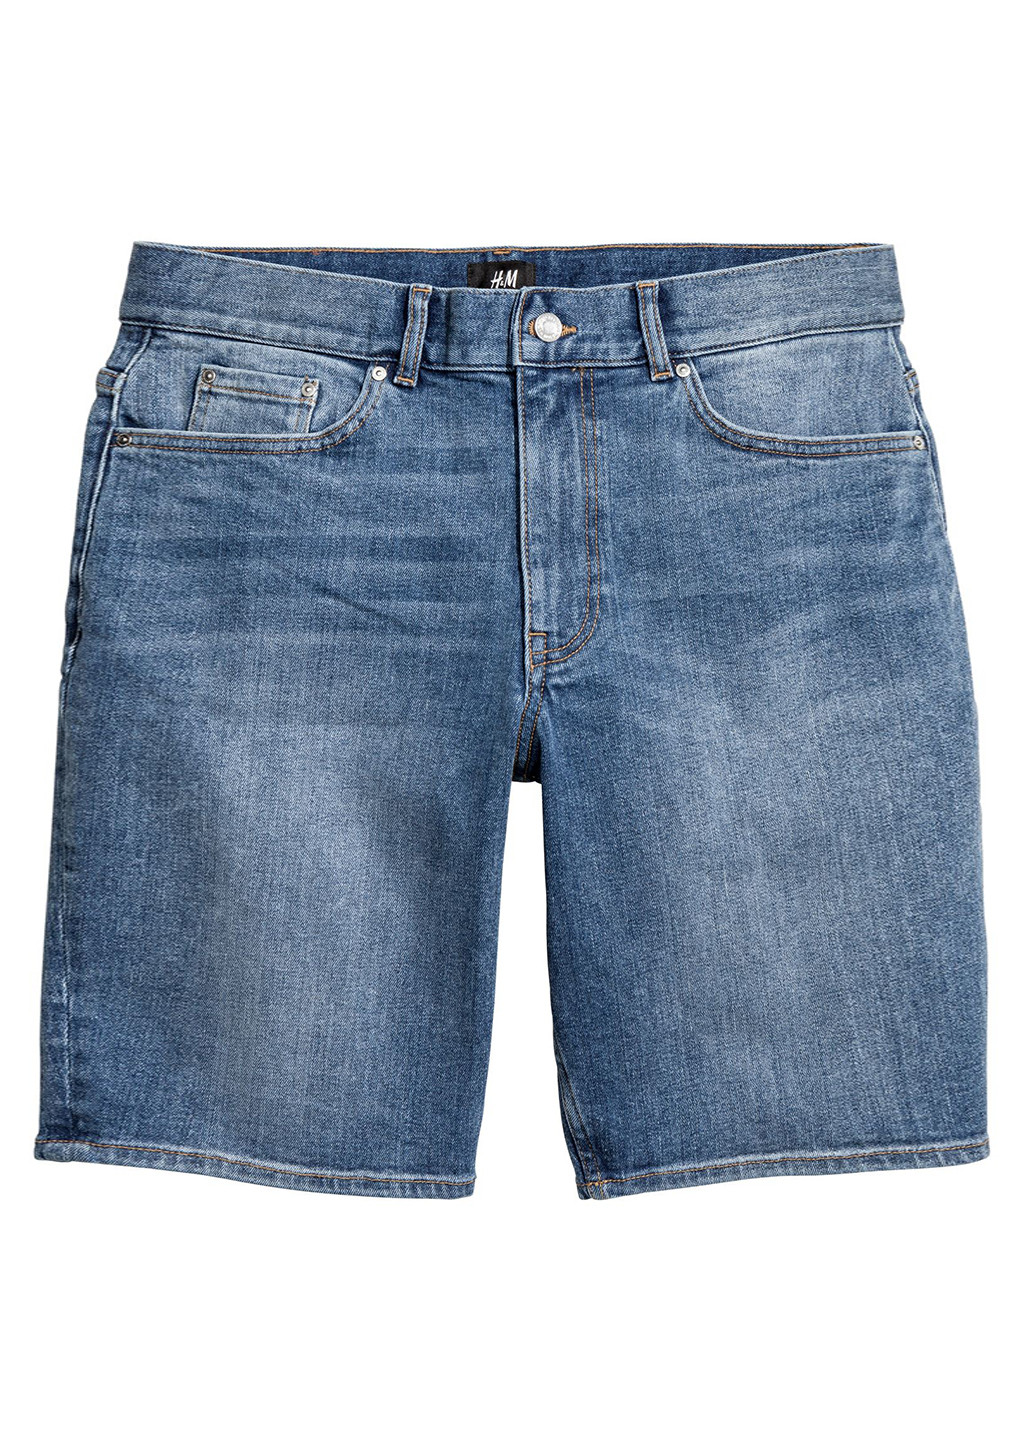 Шорты H&M однотонные тёмно-голубые джинсовые хлопок